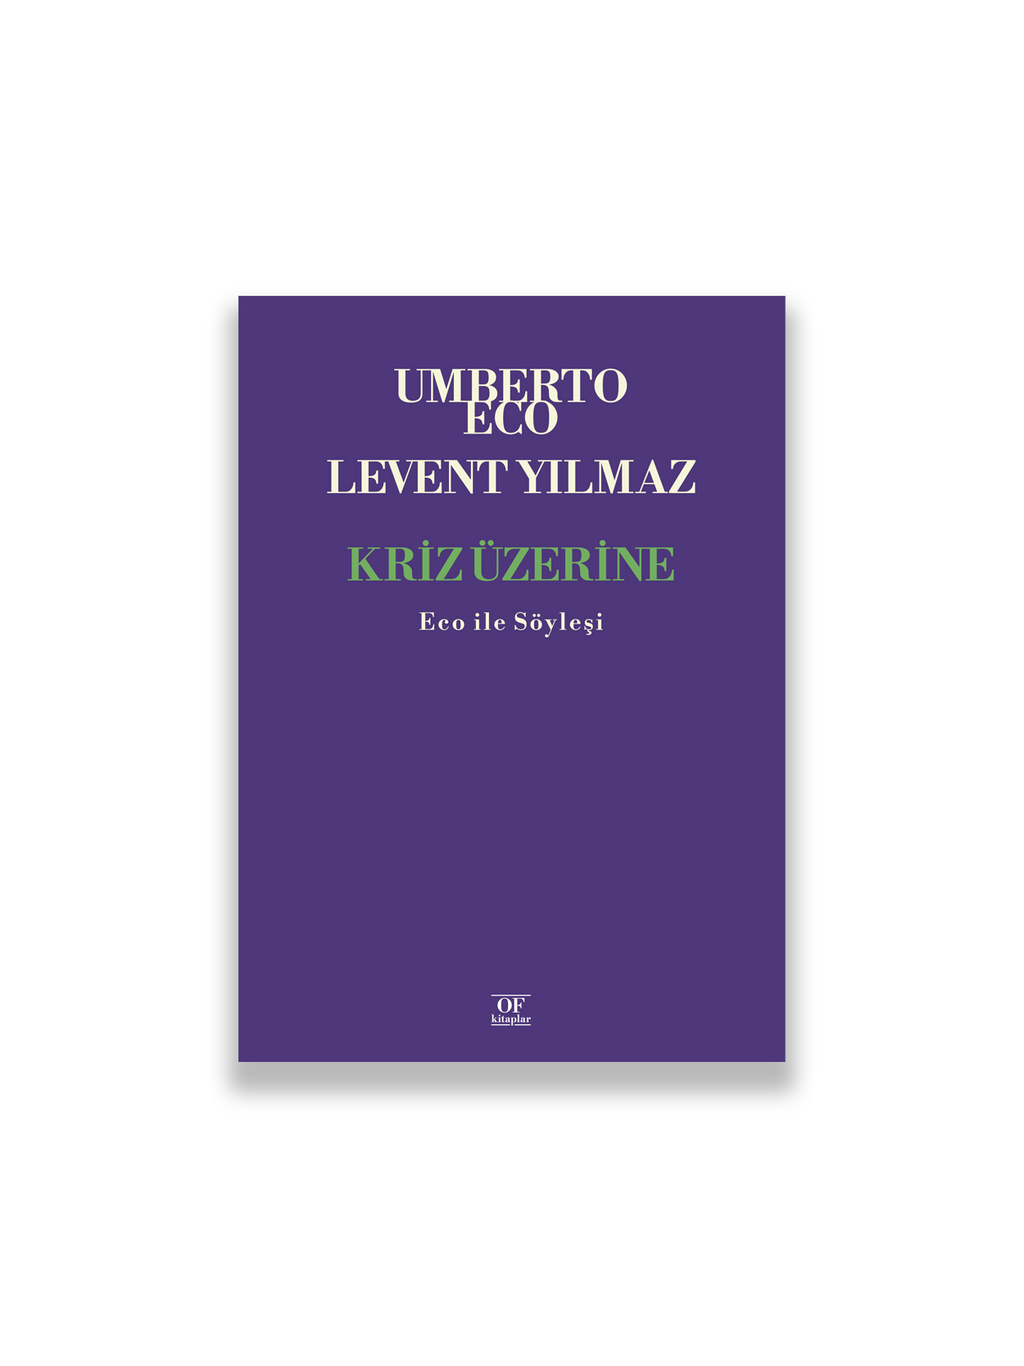 Umberto Eco, Levent Yılmaz - Kriz Üzerine: Eco ile Söyleşiler